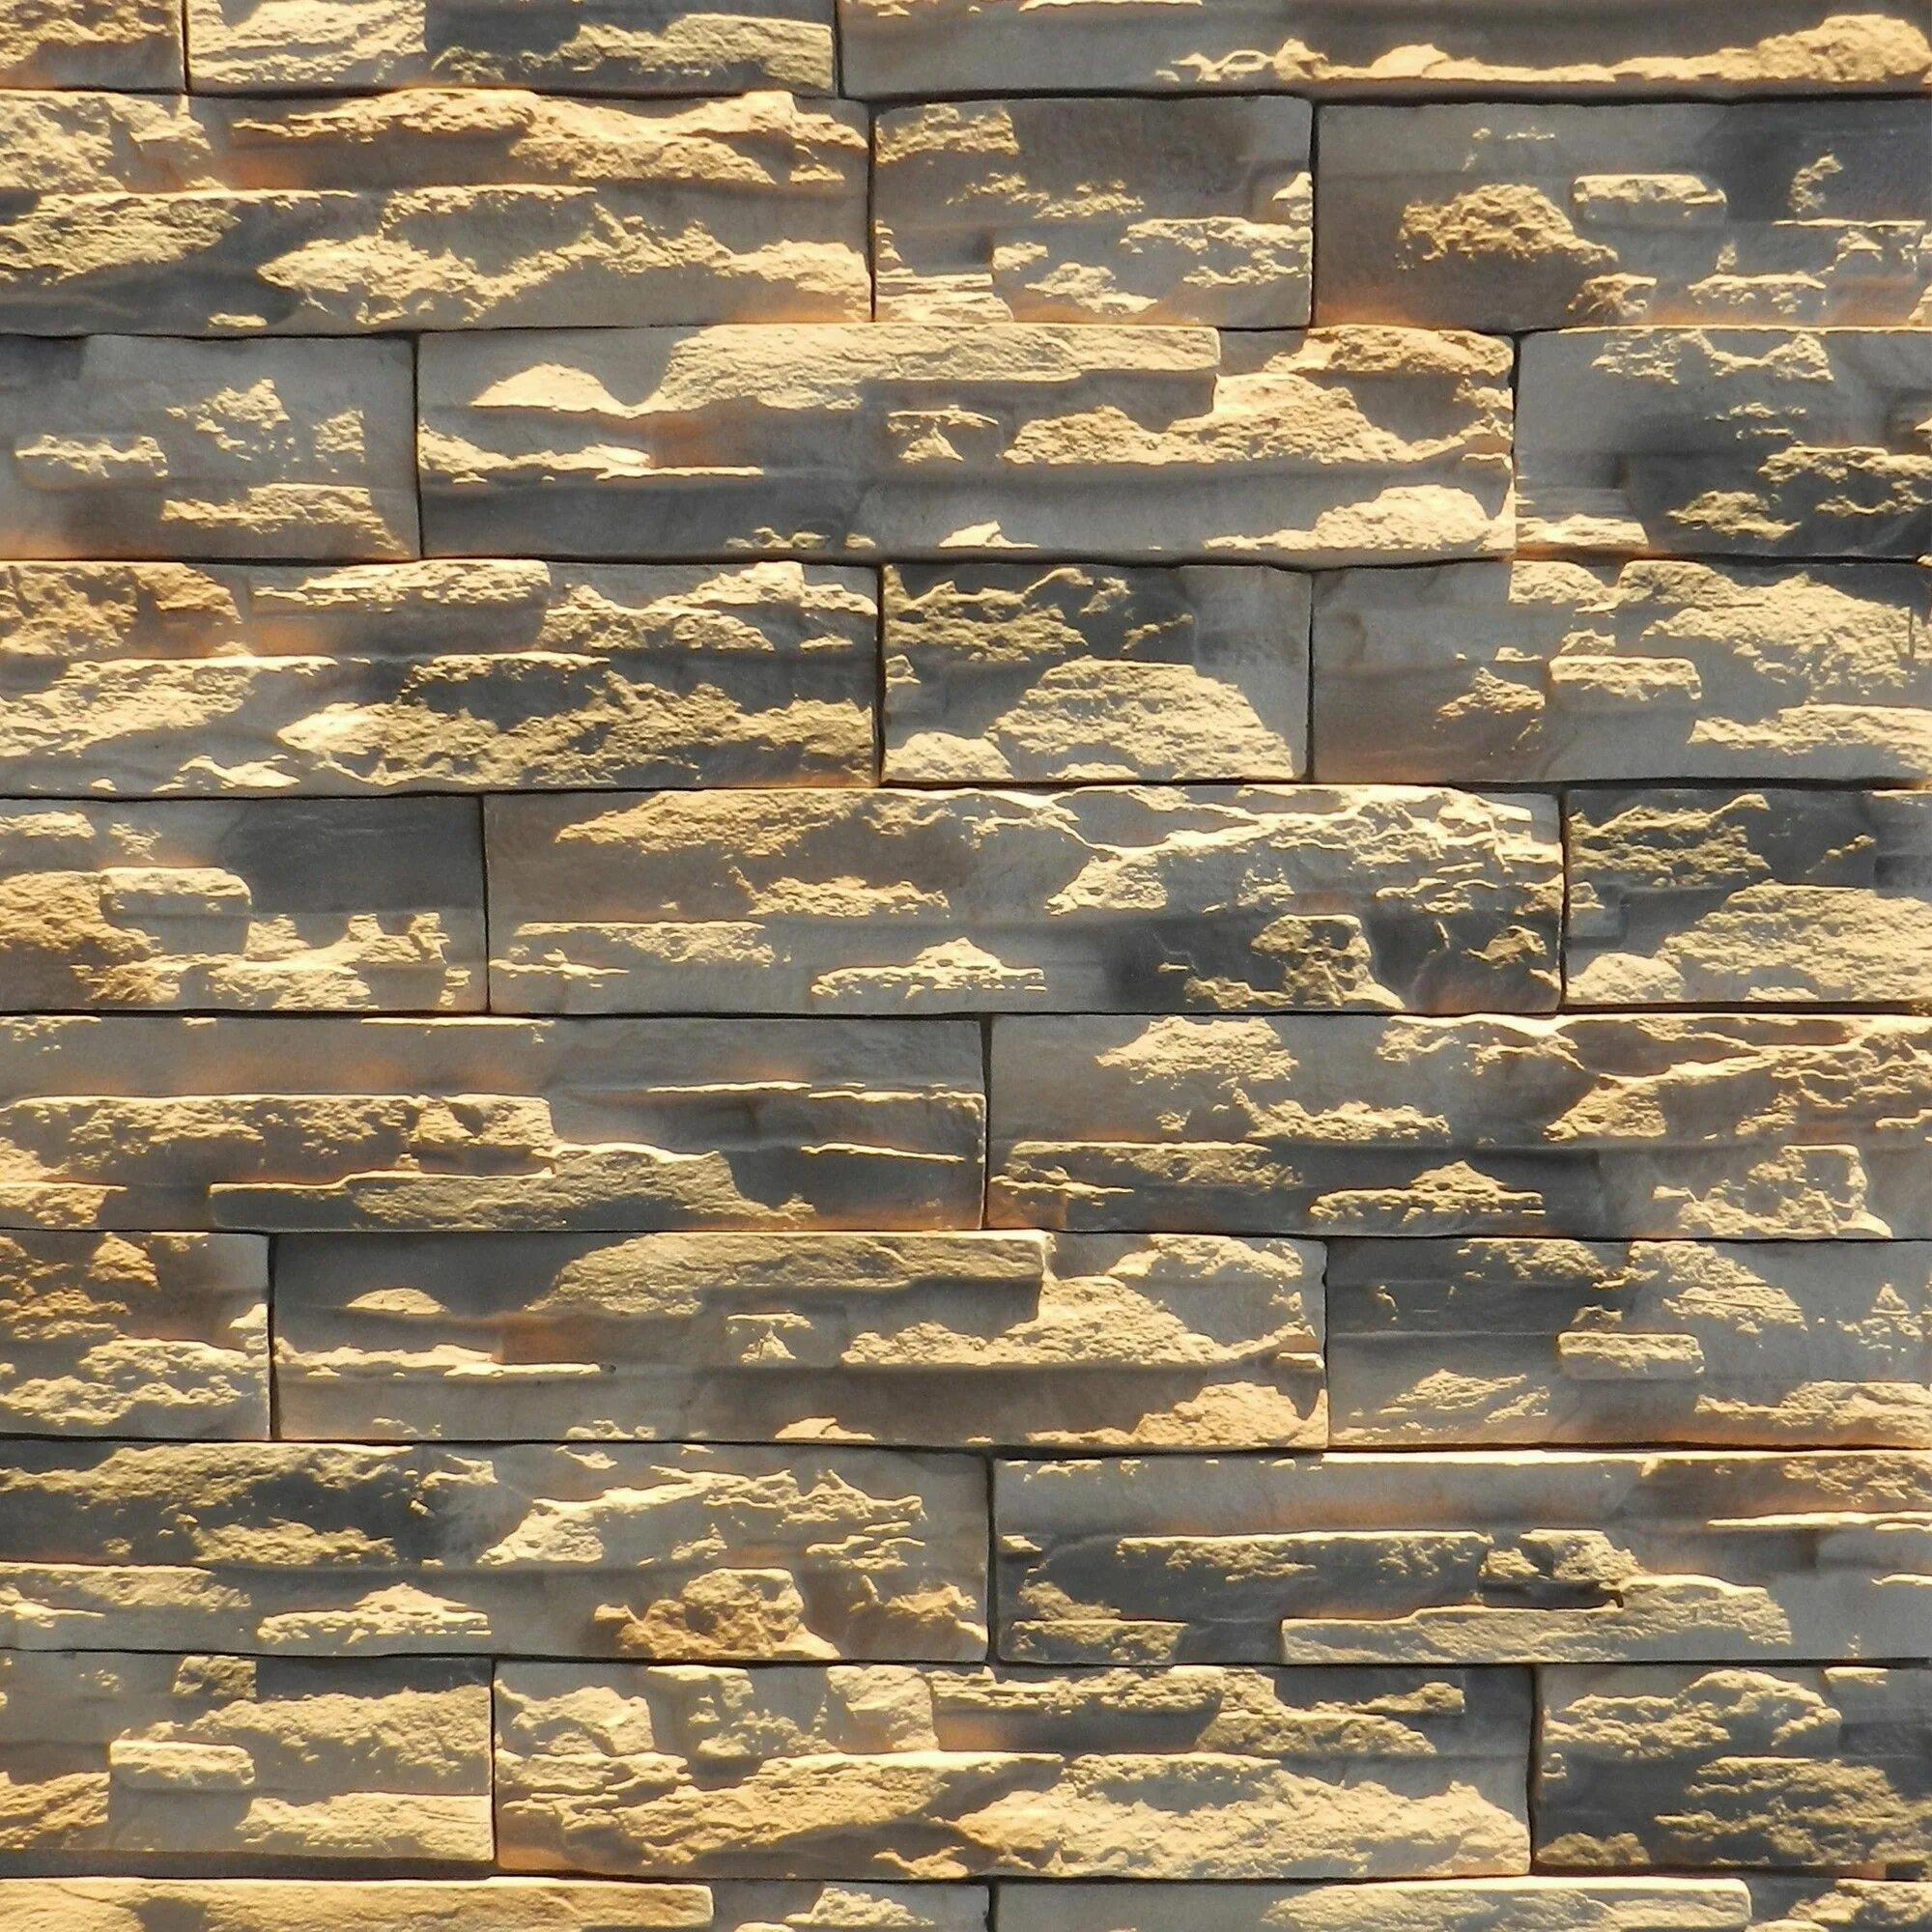 Камень искусственный ramo Колорадо-слим бежевый 1.0 м². Искусственный камень в Леруа Мерлен. Плитка фасадная Колорадо слим ramo. Плитка фасадная ramo Доломит.